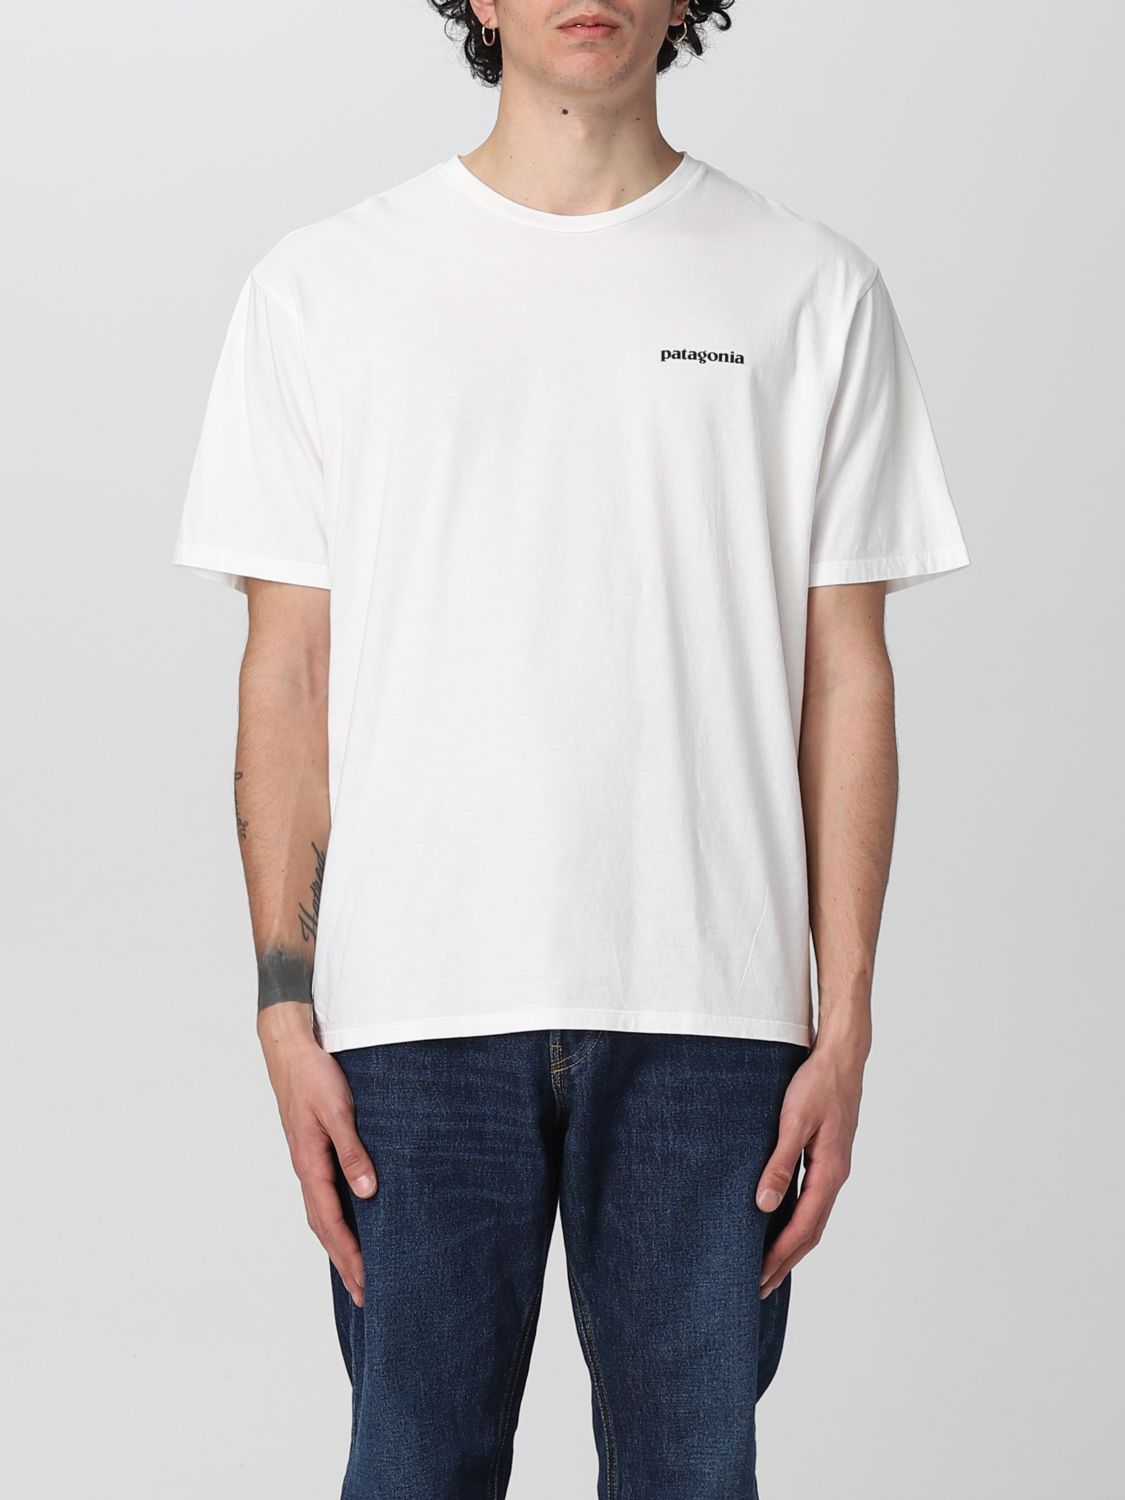 PATAGONIA: T-shirt men | T-Shirt Patagonia Men White | T-Shirt ...